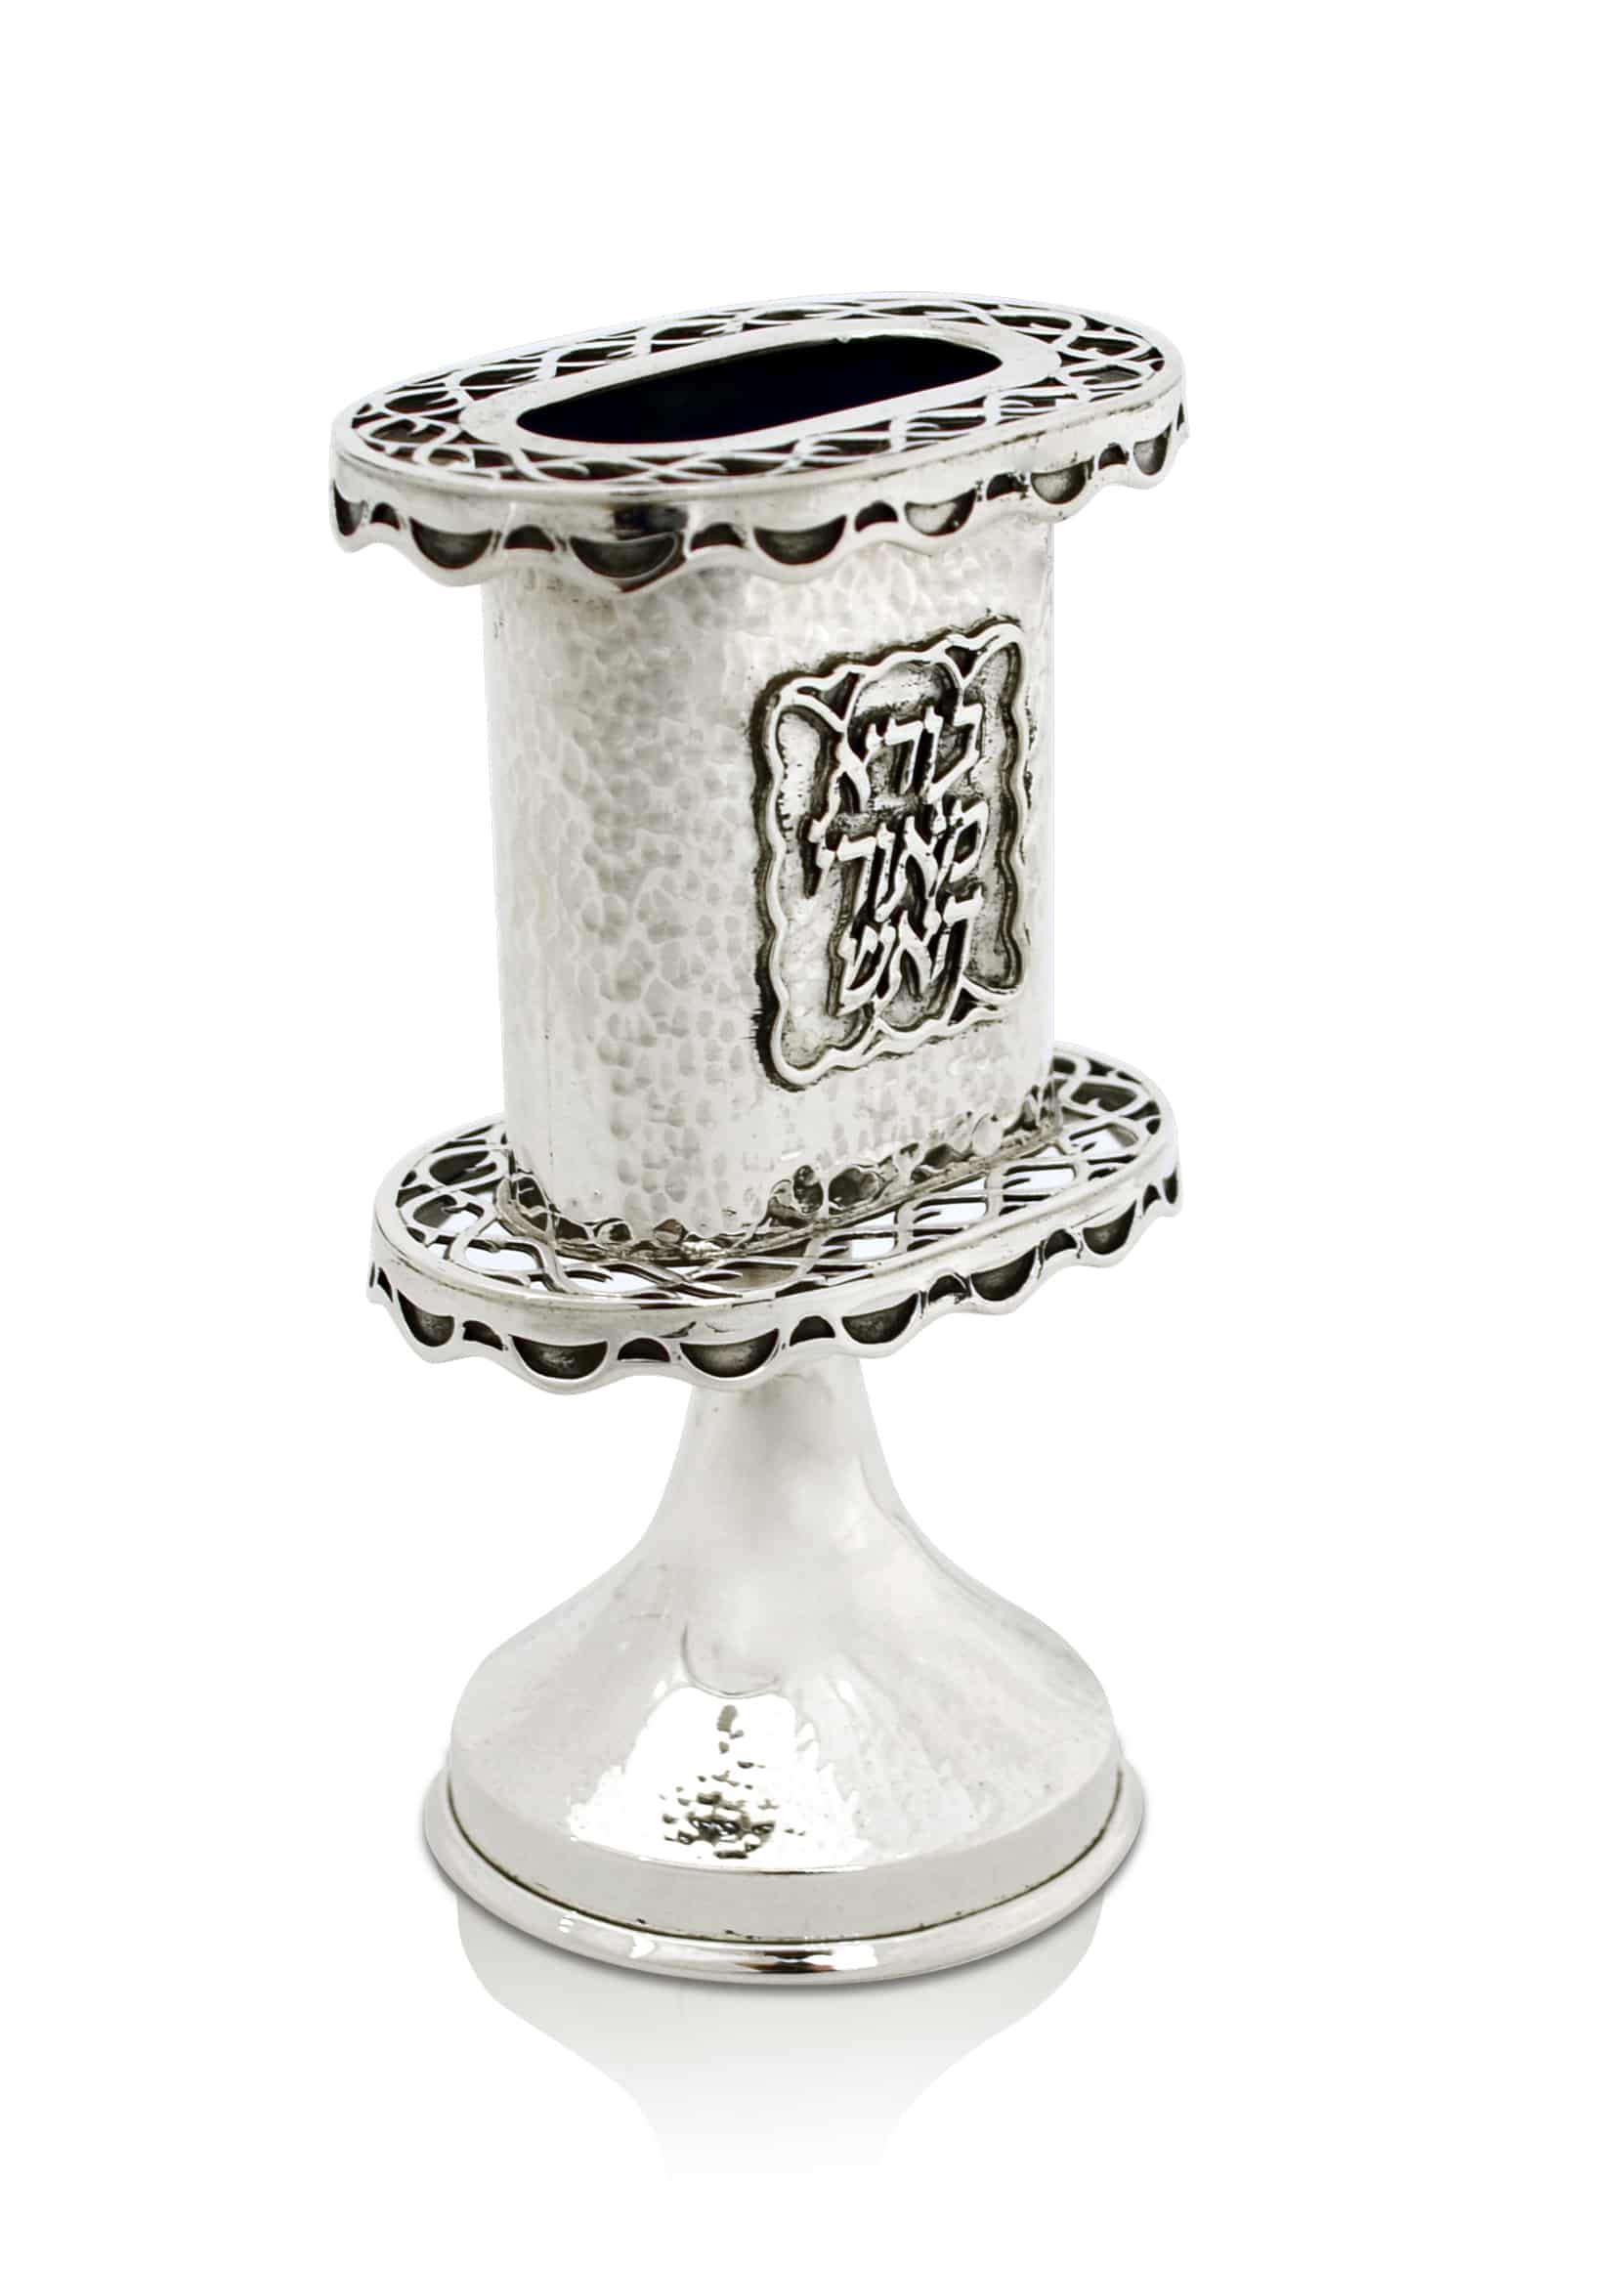 HammeredHavdalah Candle Holder Made of 925 Sterling Silver